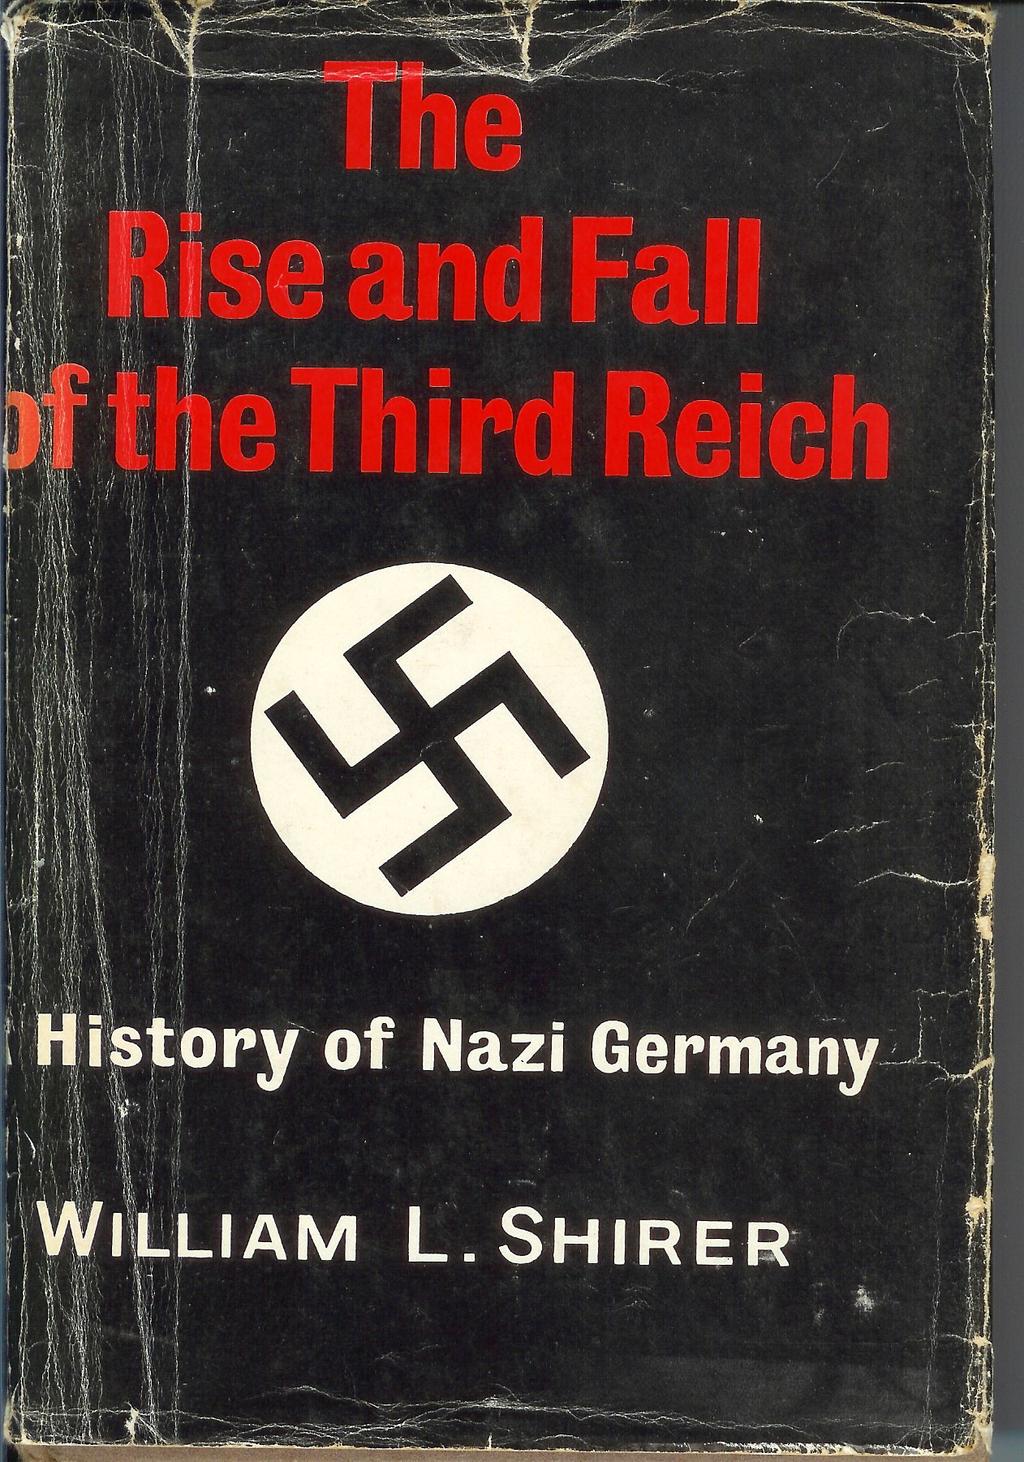 The Third Reich Hindenburg died in